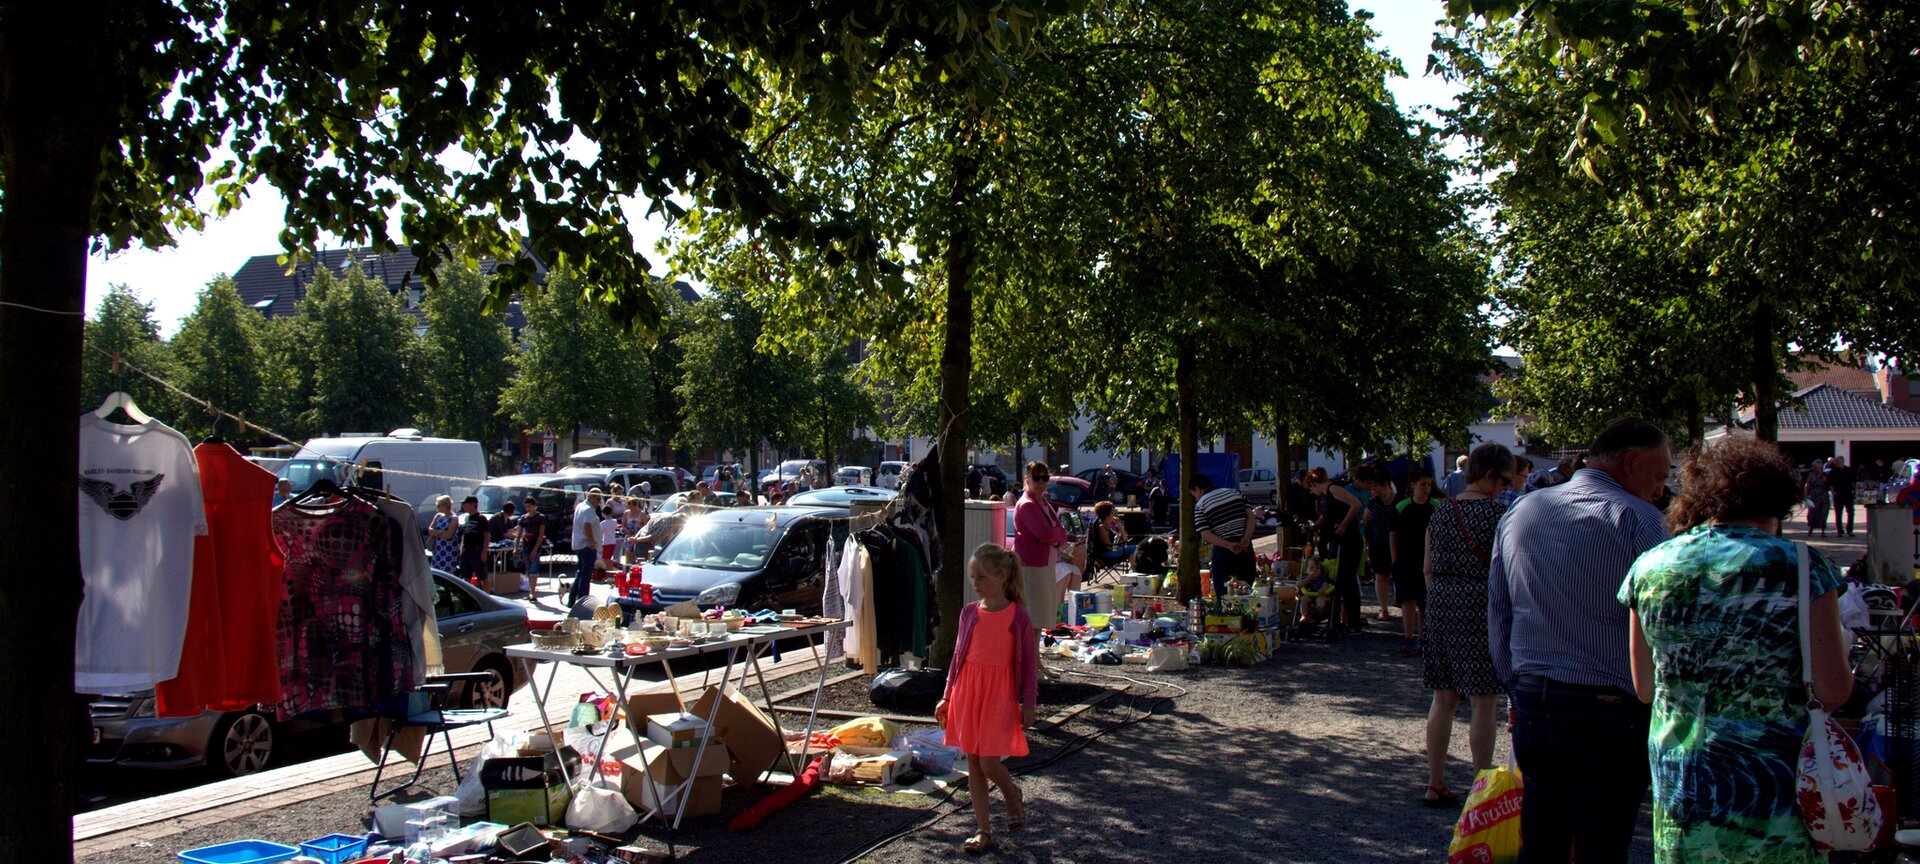 Zondagse rommelmarkt - Rommelmarkt